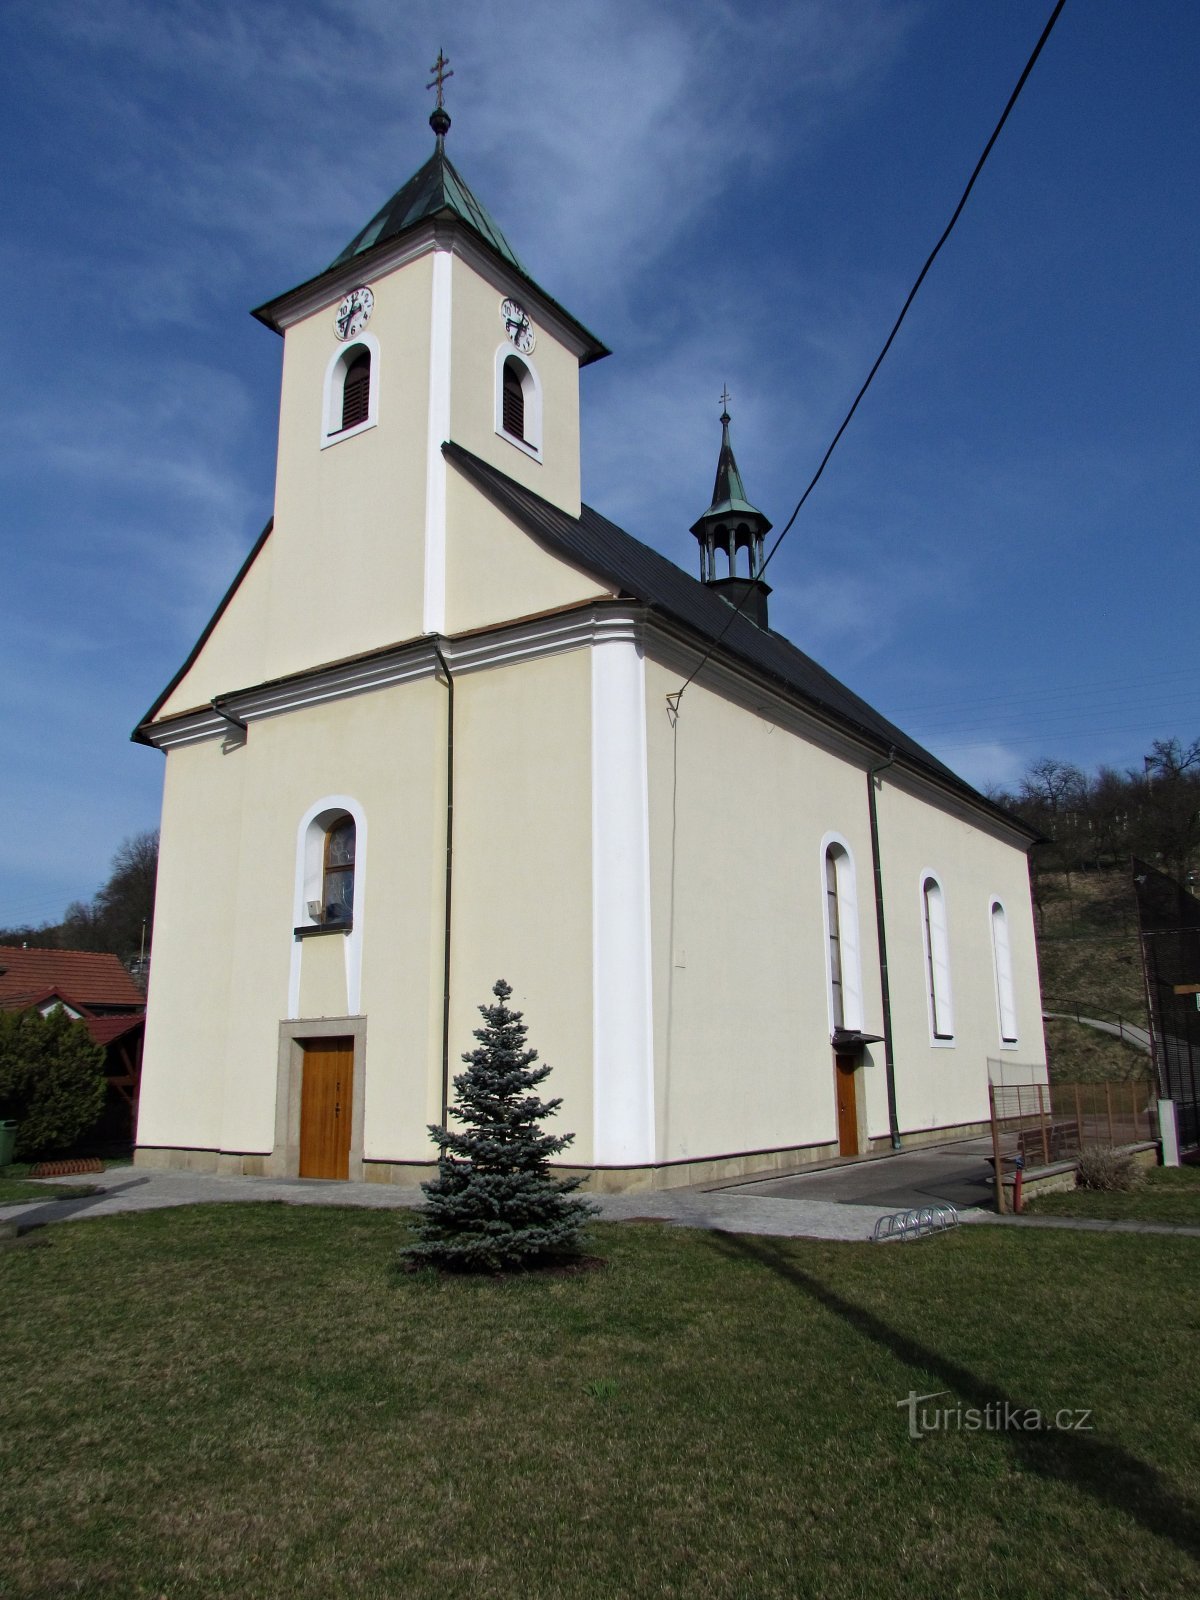 Všemina - church of St. John of Nepomuck